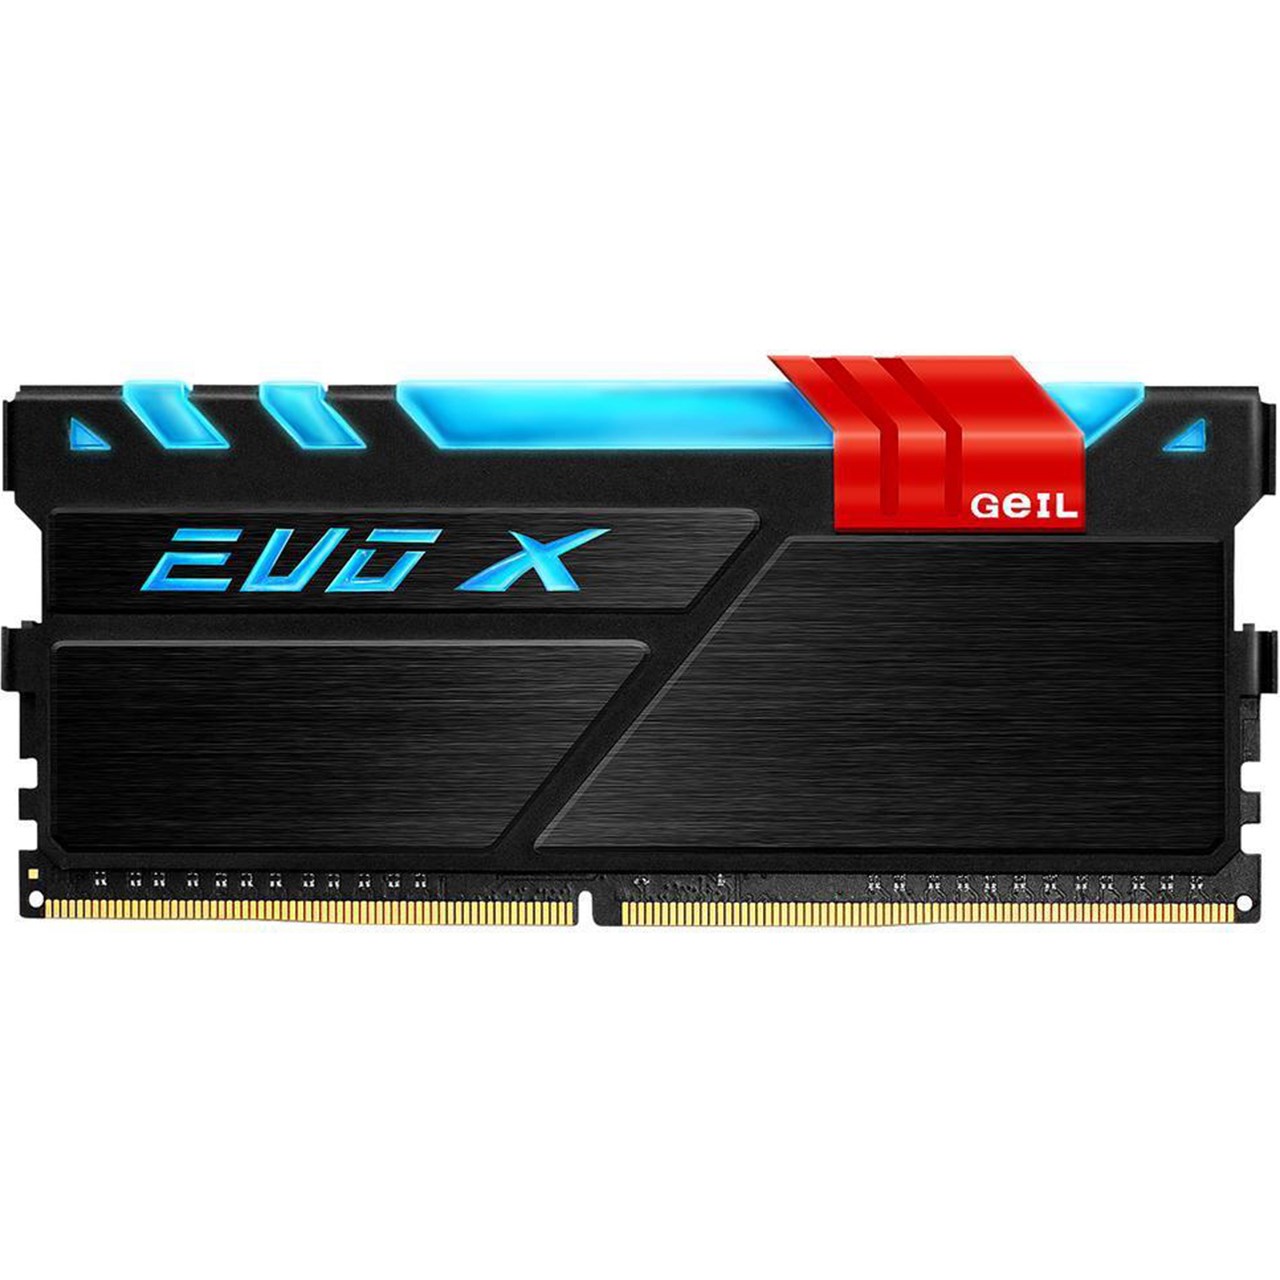 نقد و بررسی رم دسکتاپ DDR4 تک کاناله 2400 مگاهرتز CL17 گیل مدل Evo X ظرفیت 8 گیگابایت توسط خریداران